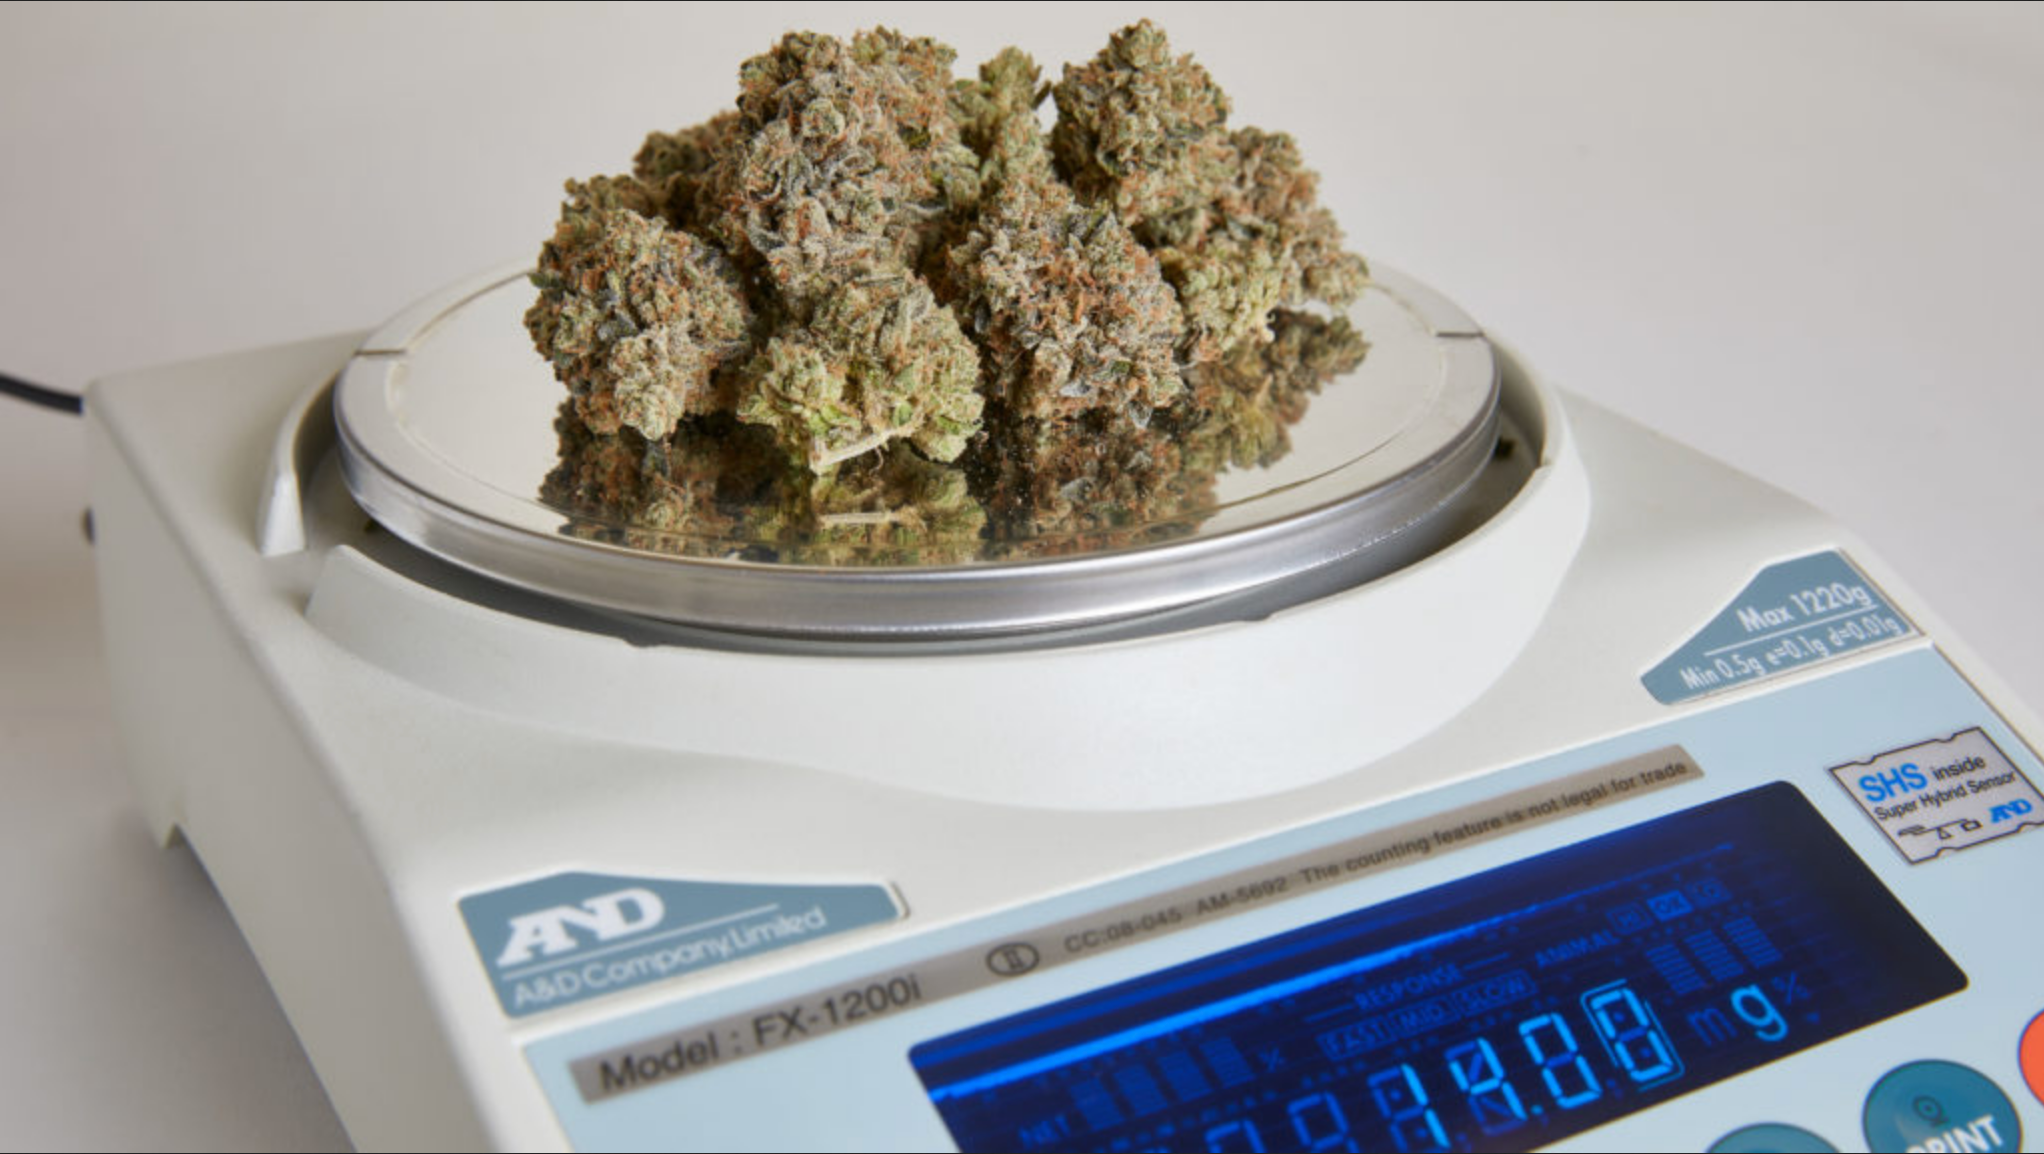 56 grams of weed